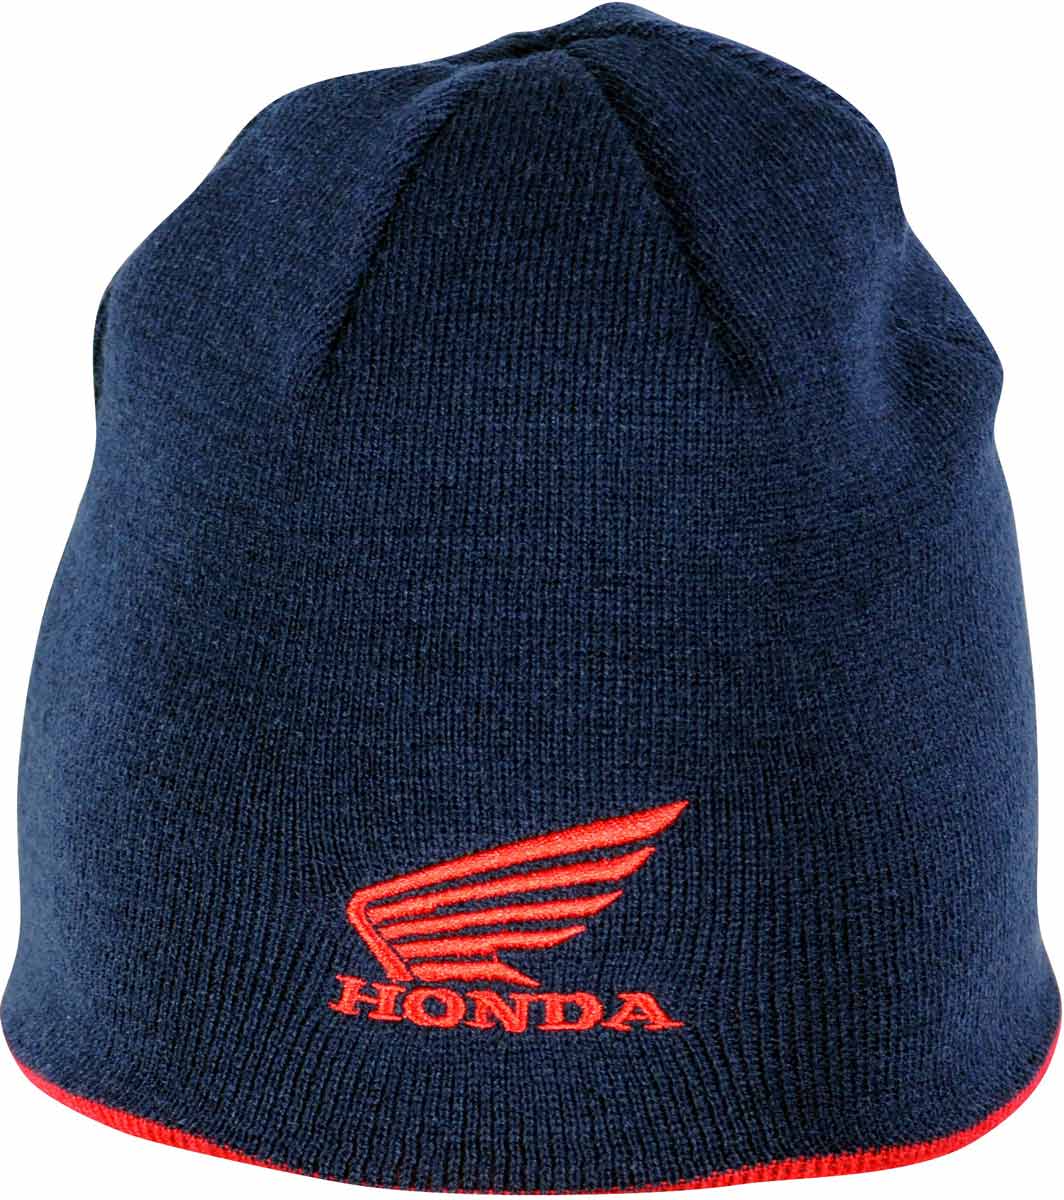 Honda commercialise des bonnets à ses couleurs pour l'hiver 2015